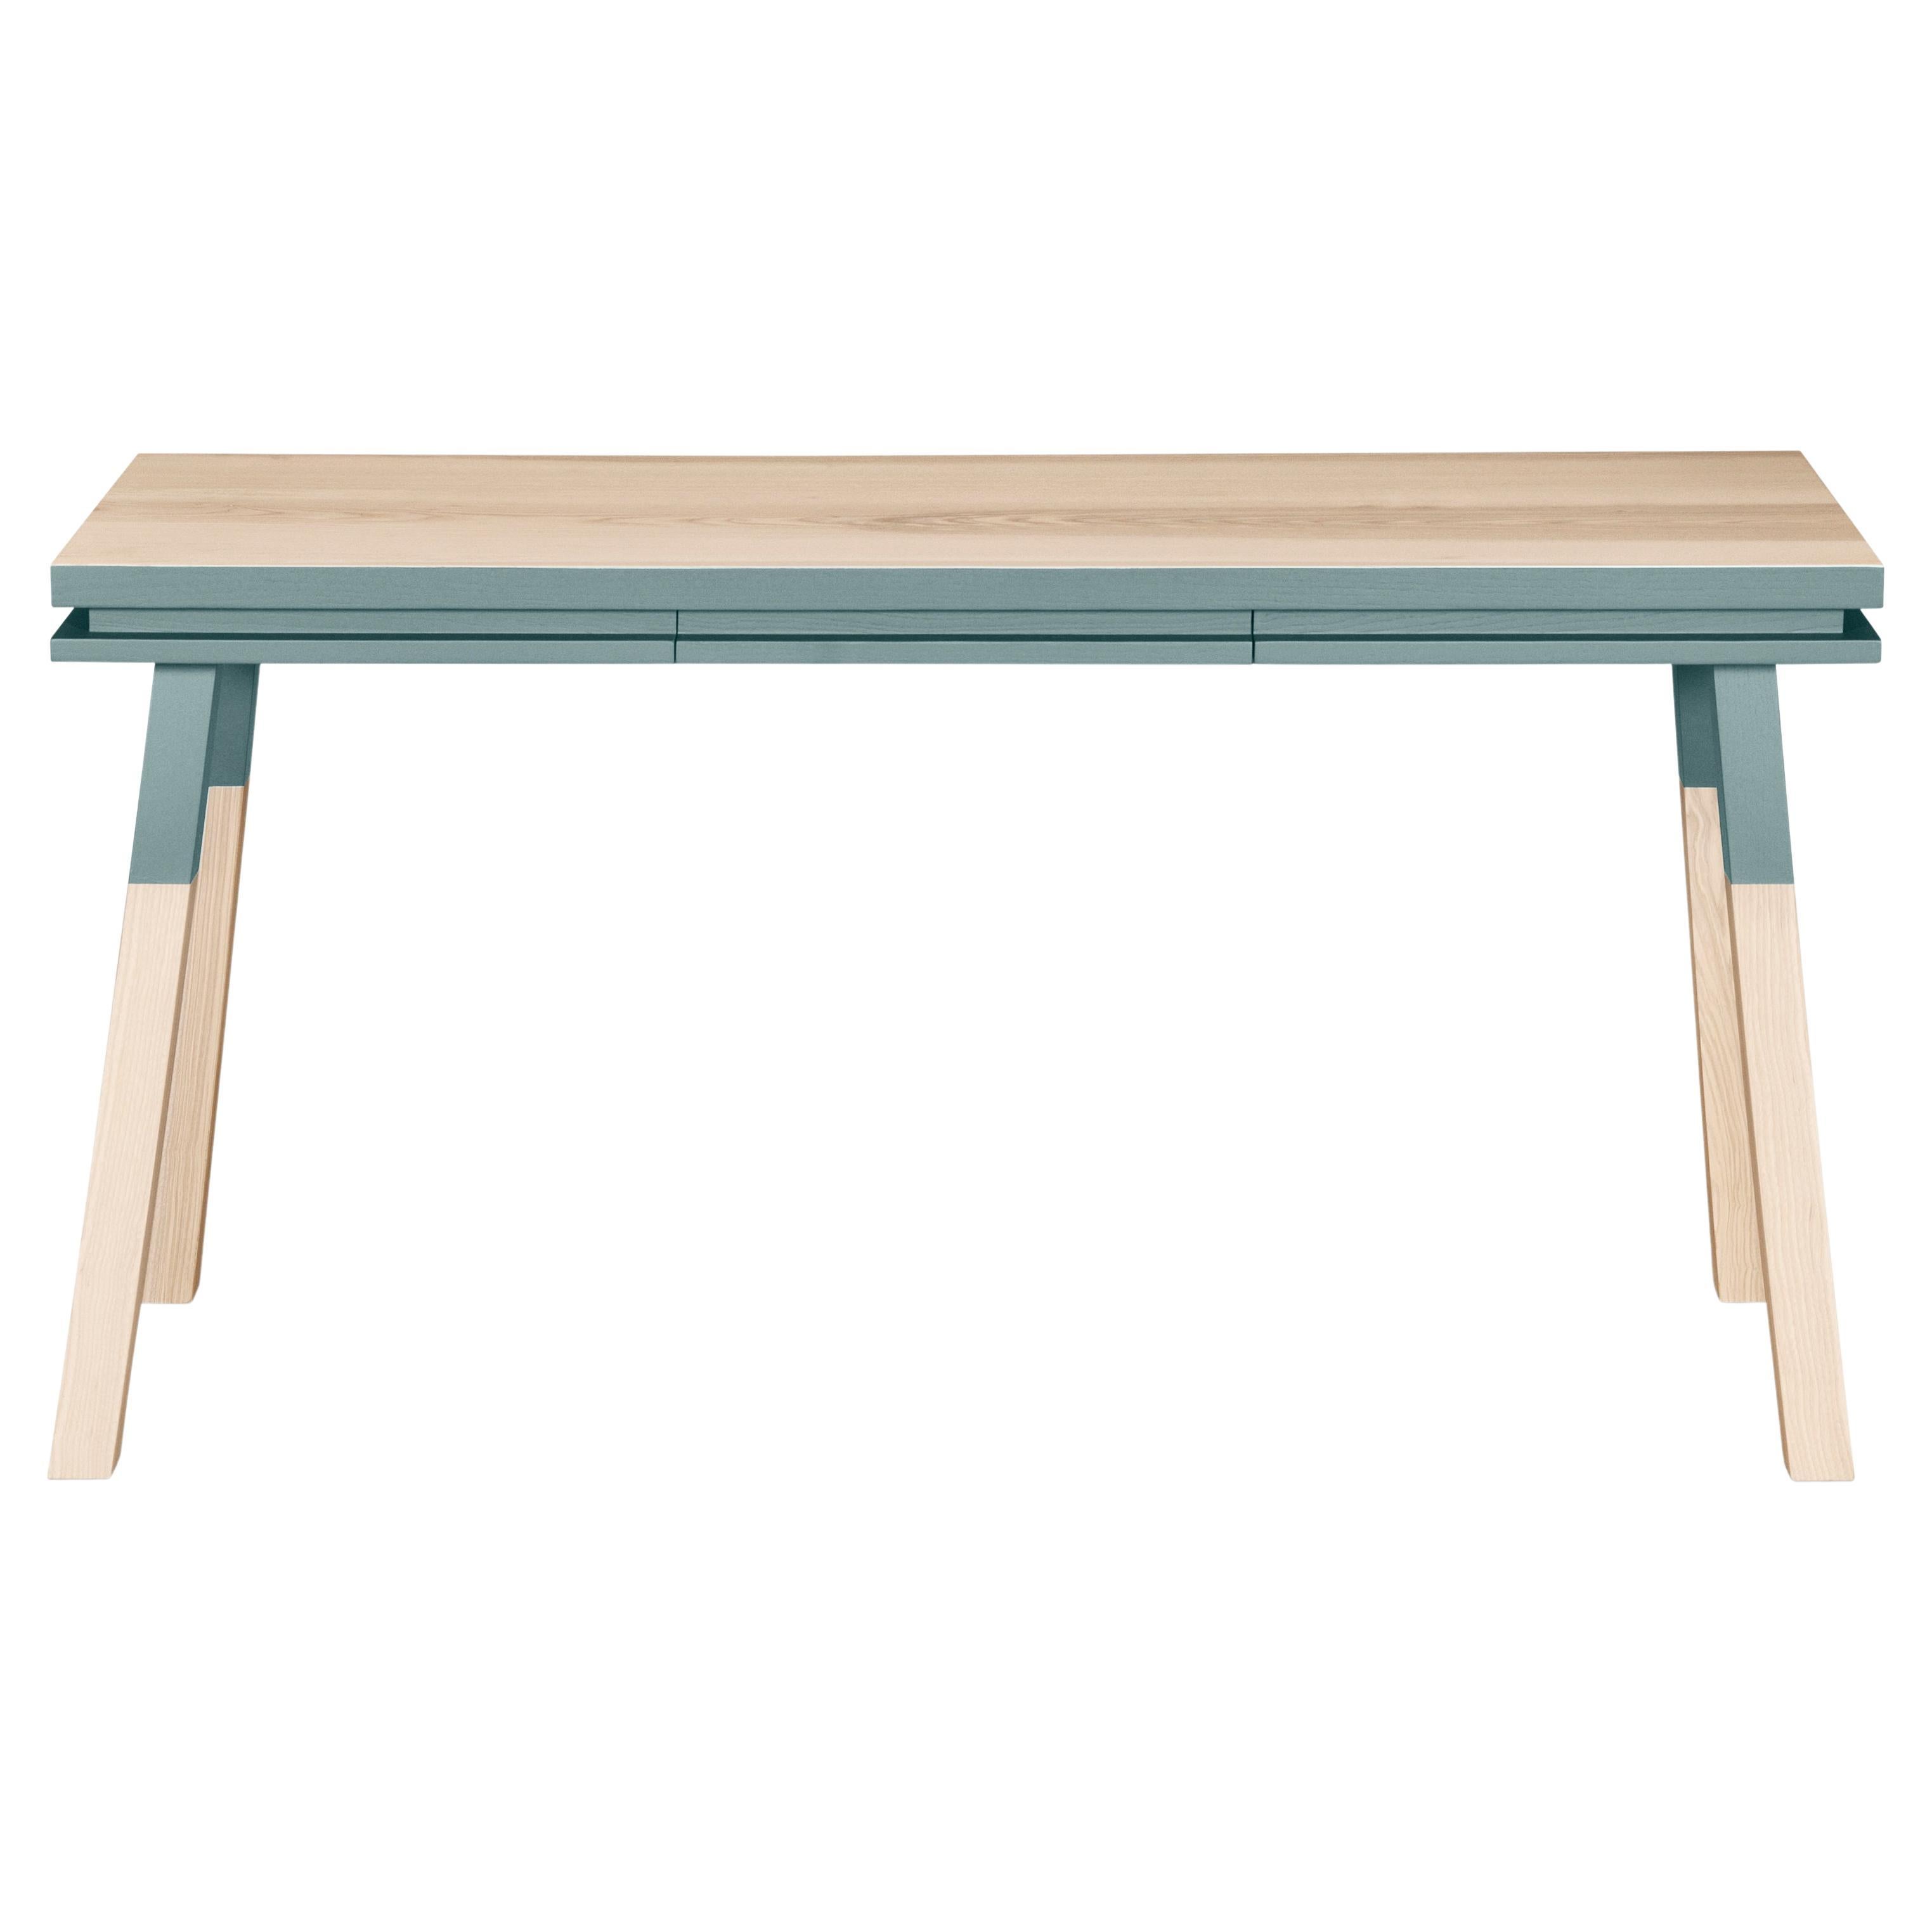 Table console rectangulaire grise et bleue, bois massif, design Eric Gizard, Paris 